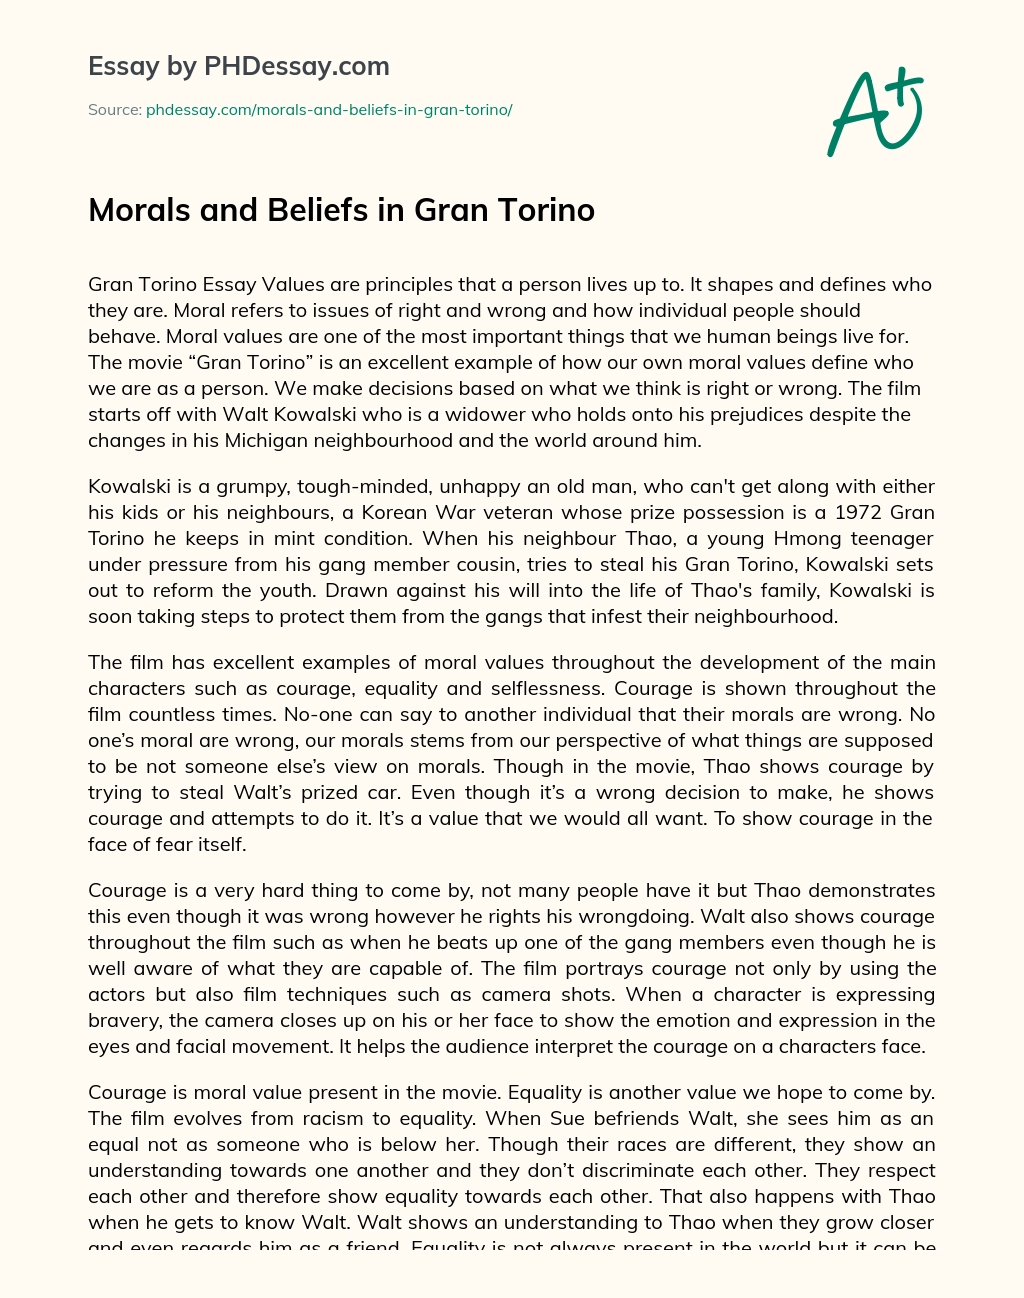 Morals and Beliefs in Gran Torino essay